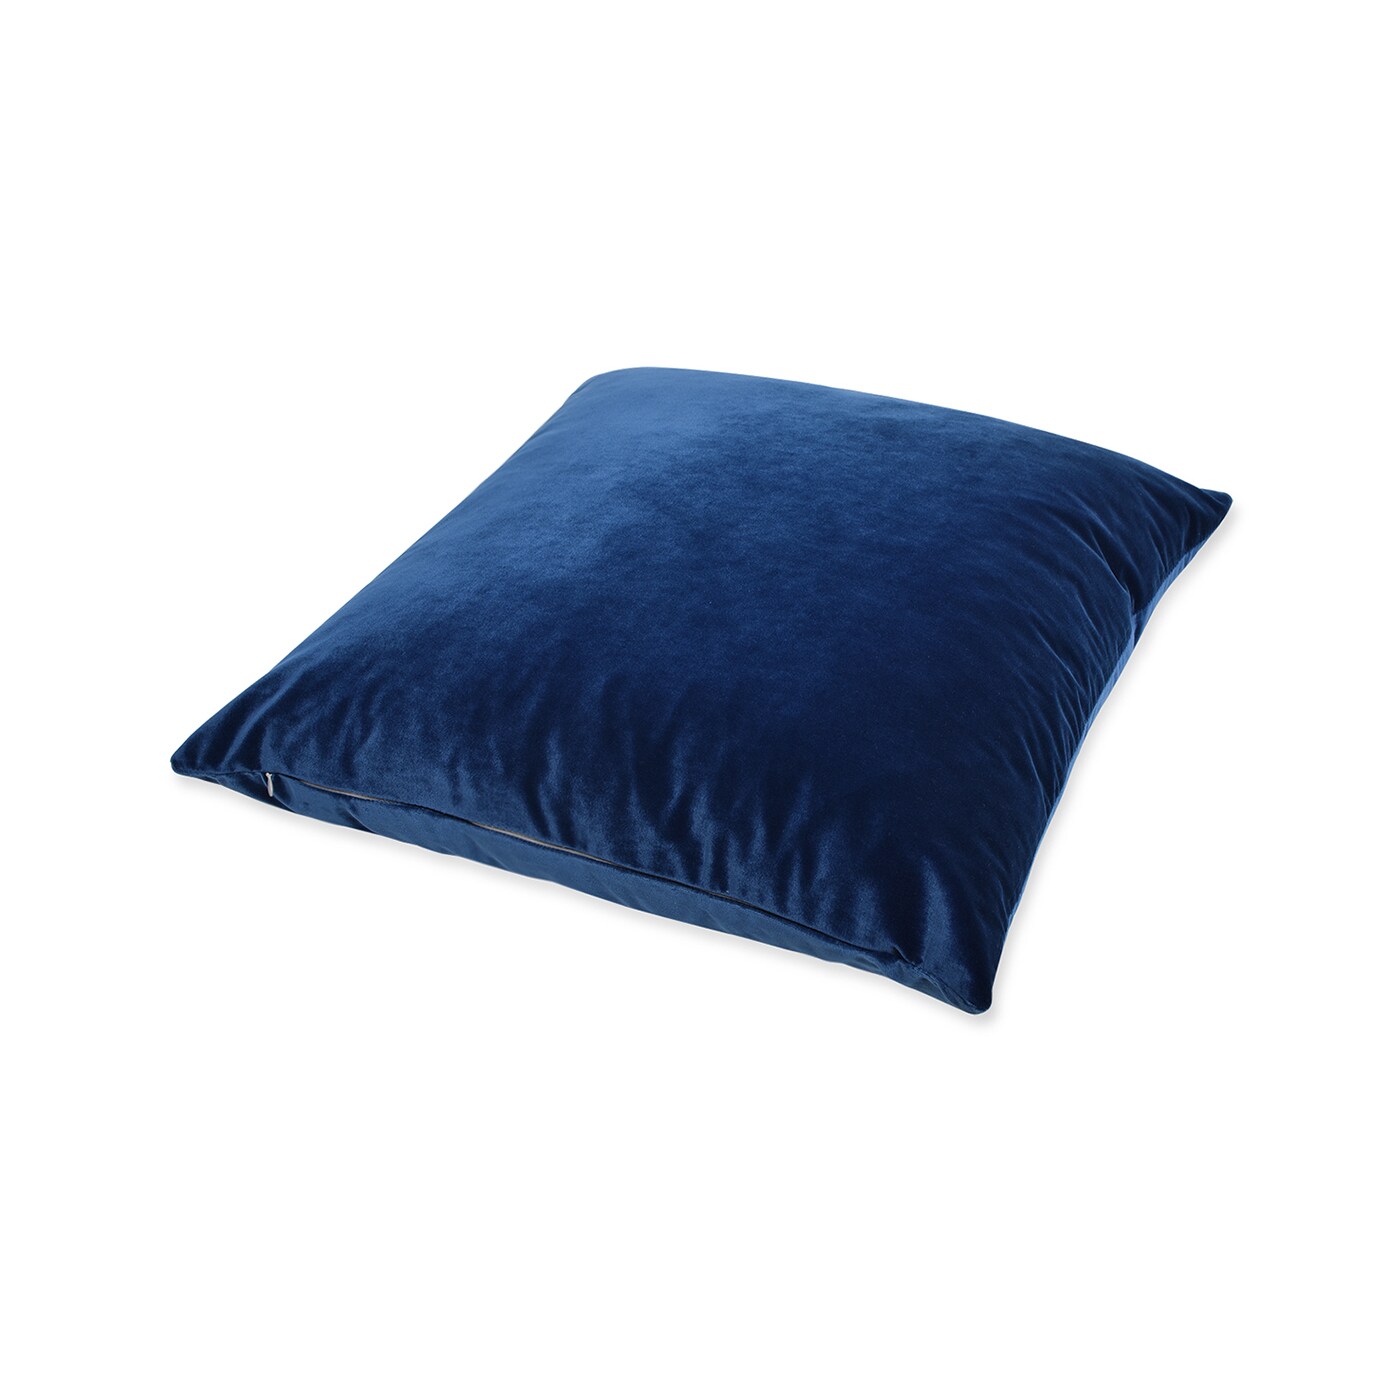 Plume 24 Square Feather Down Throw Pillow, Set of 2, Indigo Blue